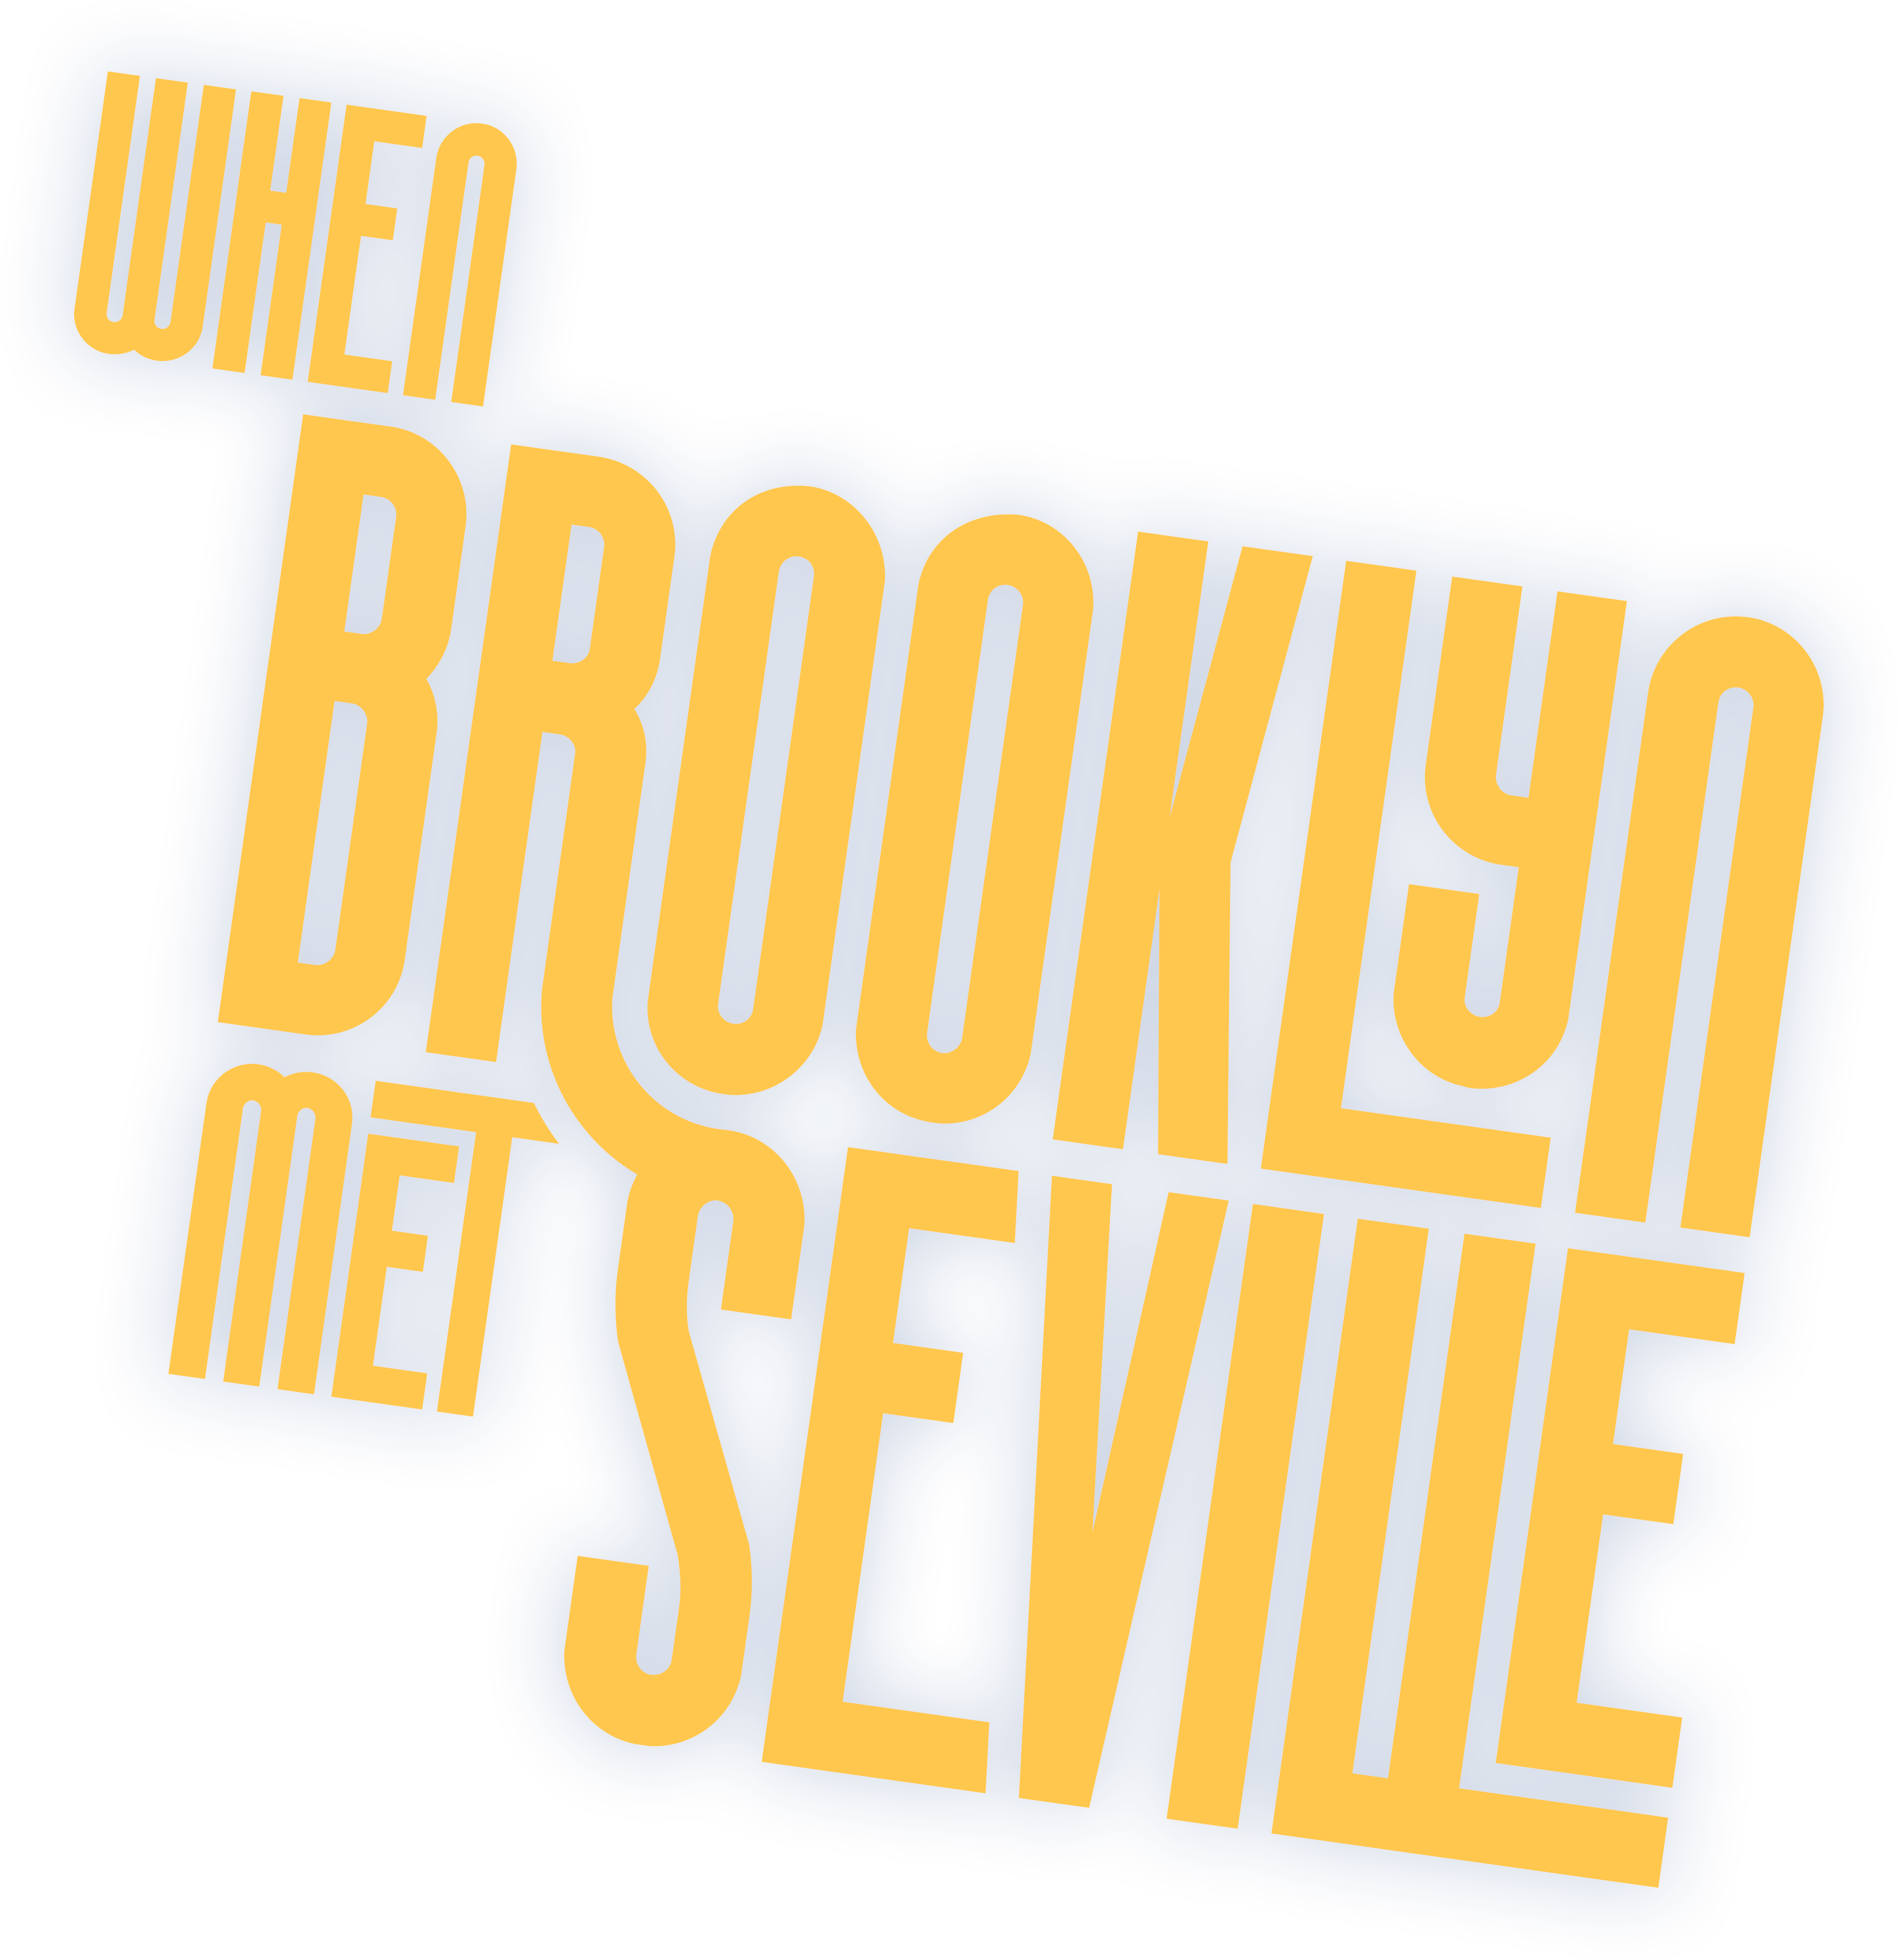 When Brooklyn Met Seville